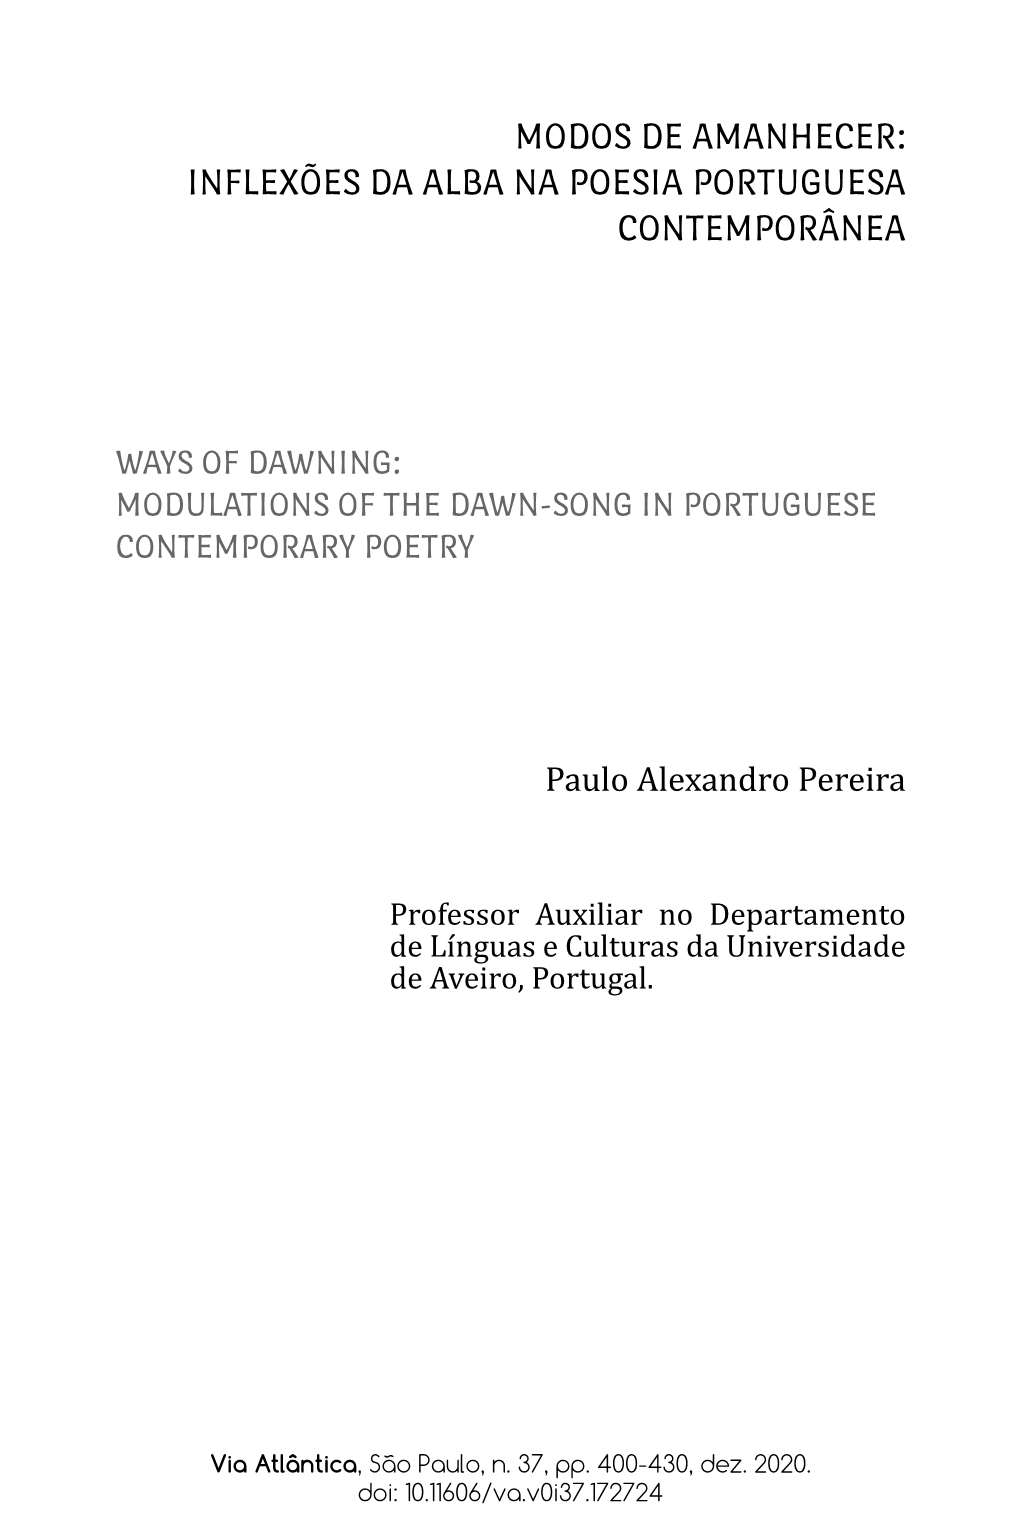 Inflexões Da Alba Na Poesia Portuguesa Contemporânea